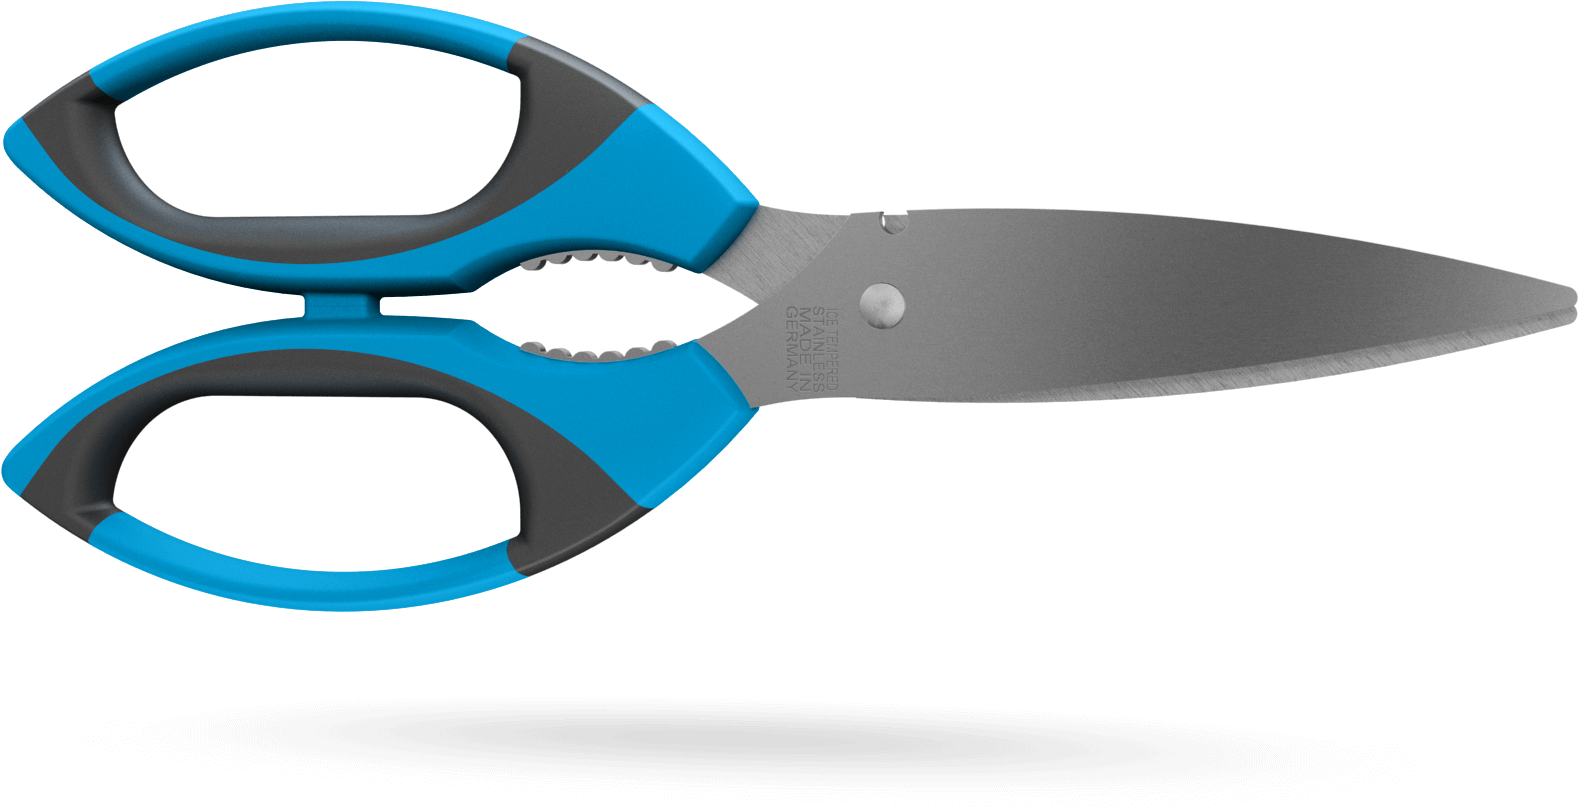 Cutting Tool (1920x1080)